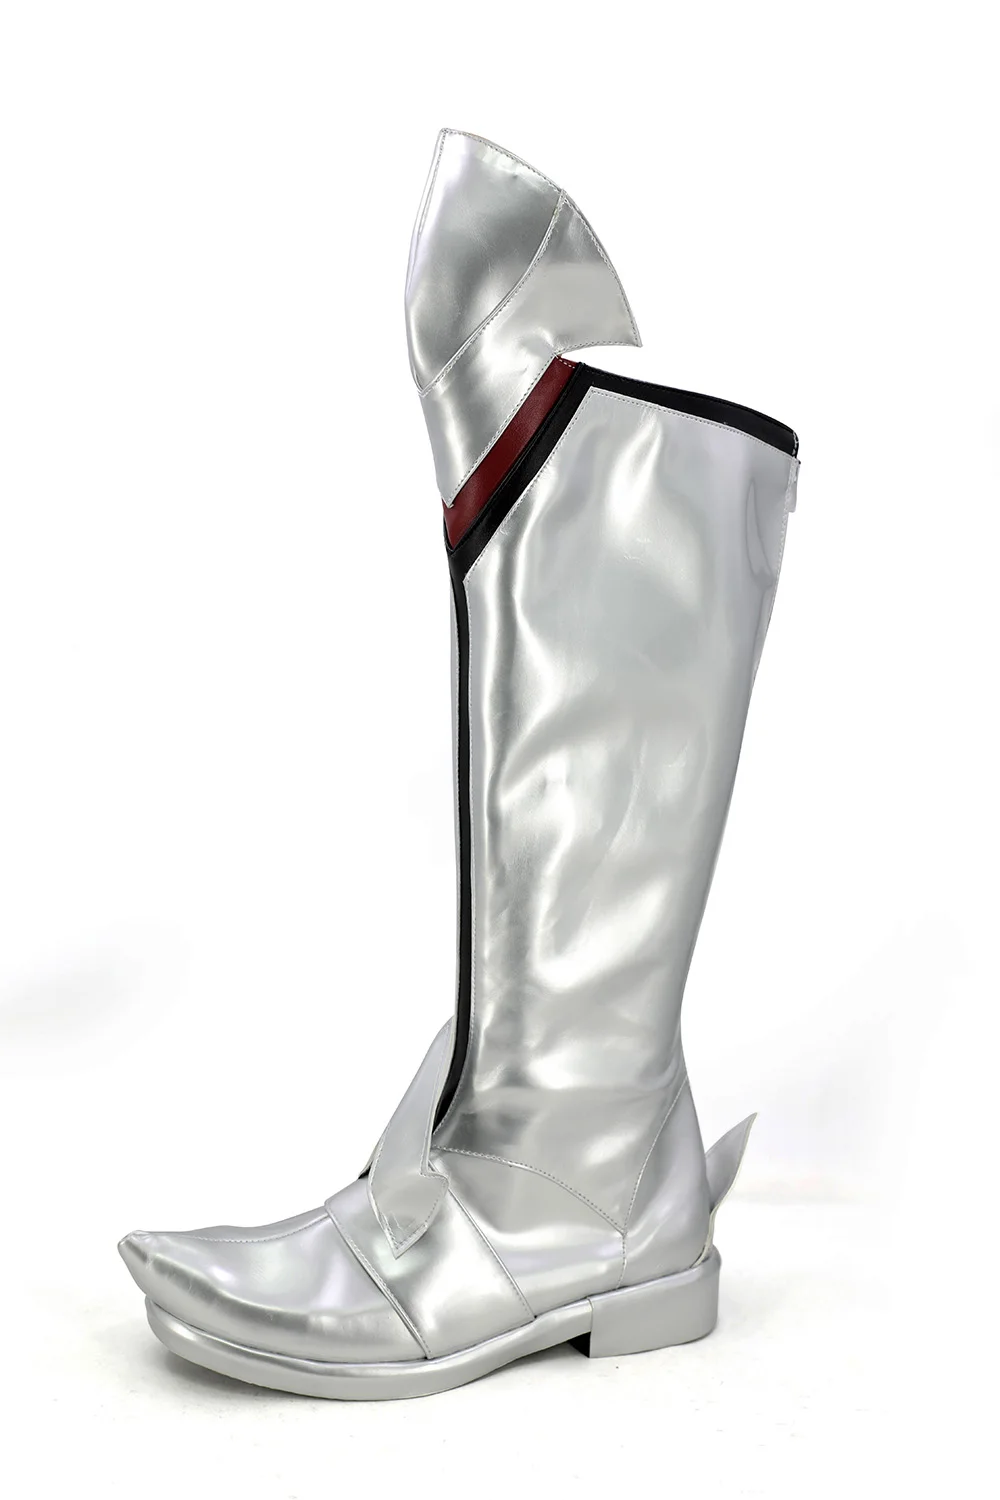 Fate Apocrypha FGO Mordred/ботинки для косплея; обувь серебристого цвета; изготовленный на заказ любой размер